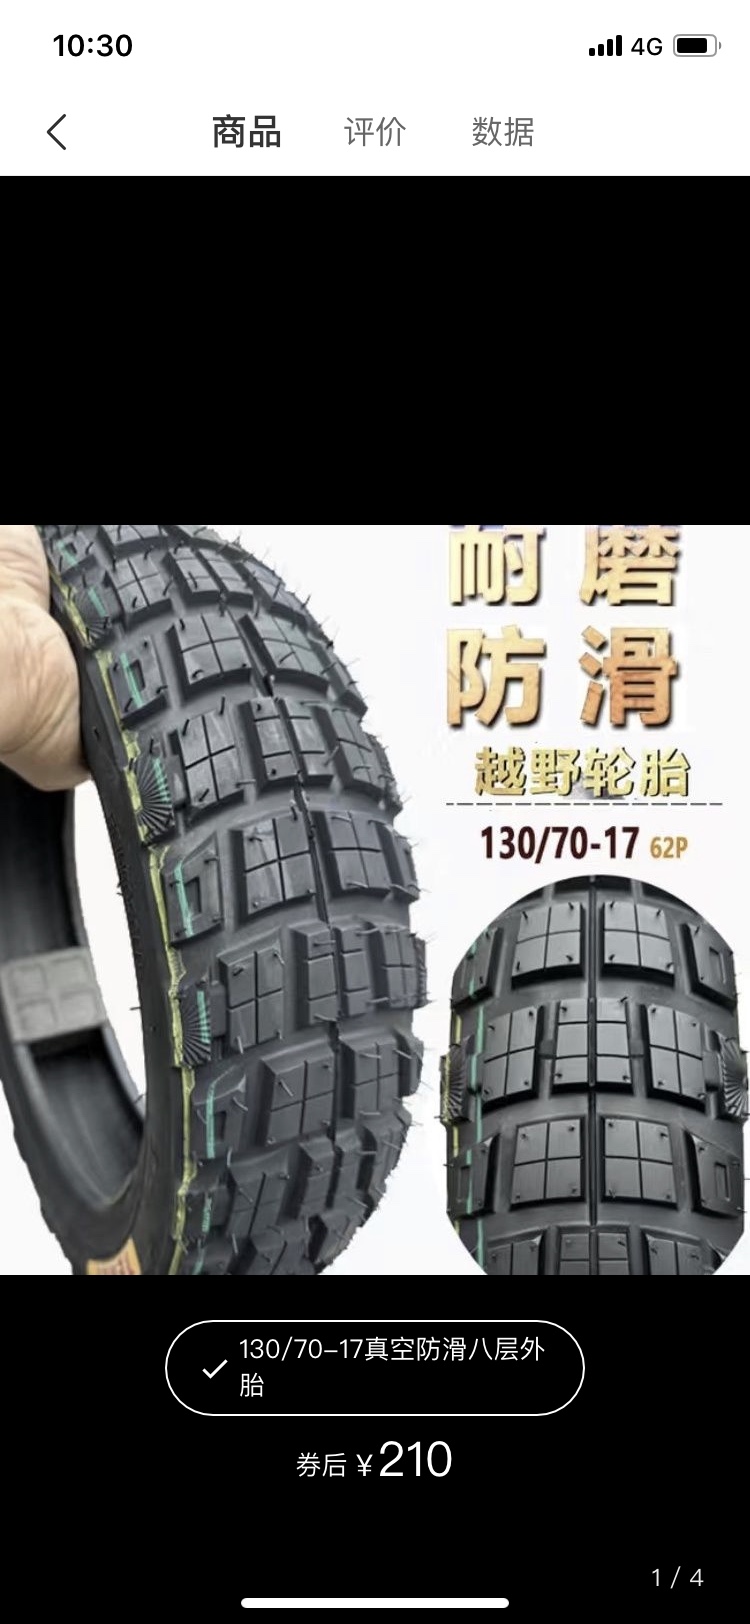 摩托车轮胎钱江QJ150-19A/19C蓝宝龙钱江龙130/70-17真空防滑轮胎